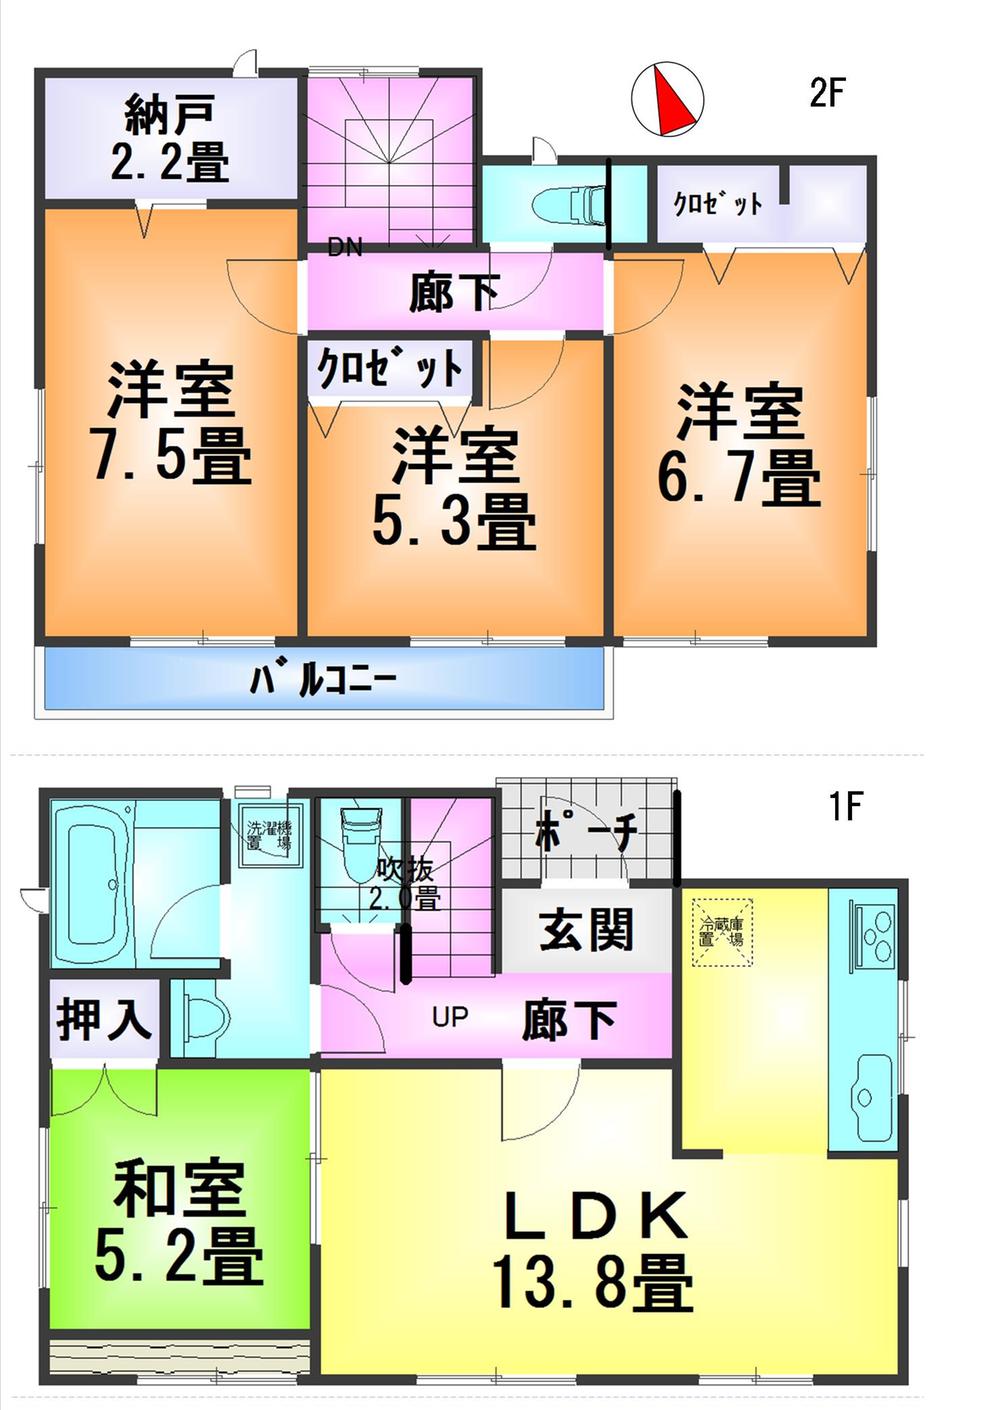 Floor plan. 14.8 million yen, 4LDK, Land area 166.8 sq m , Building area 91.93 sq m